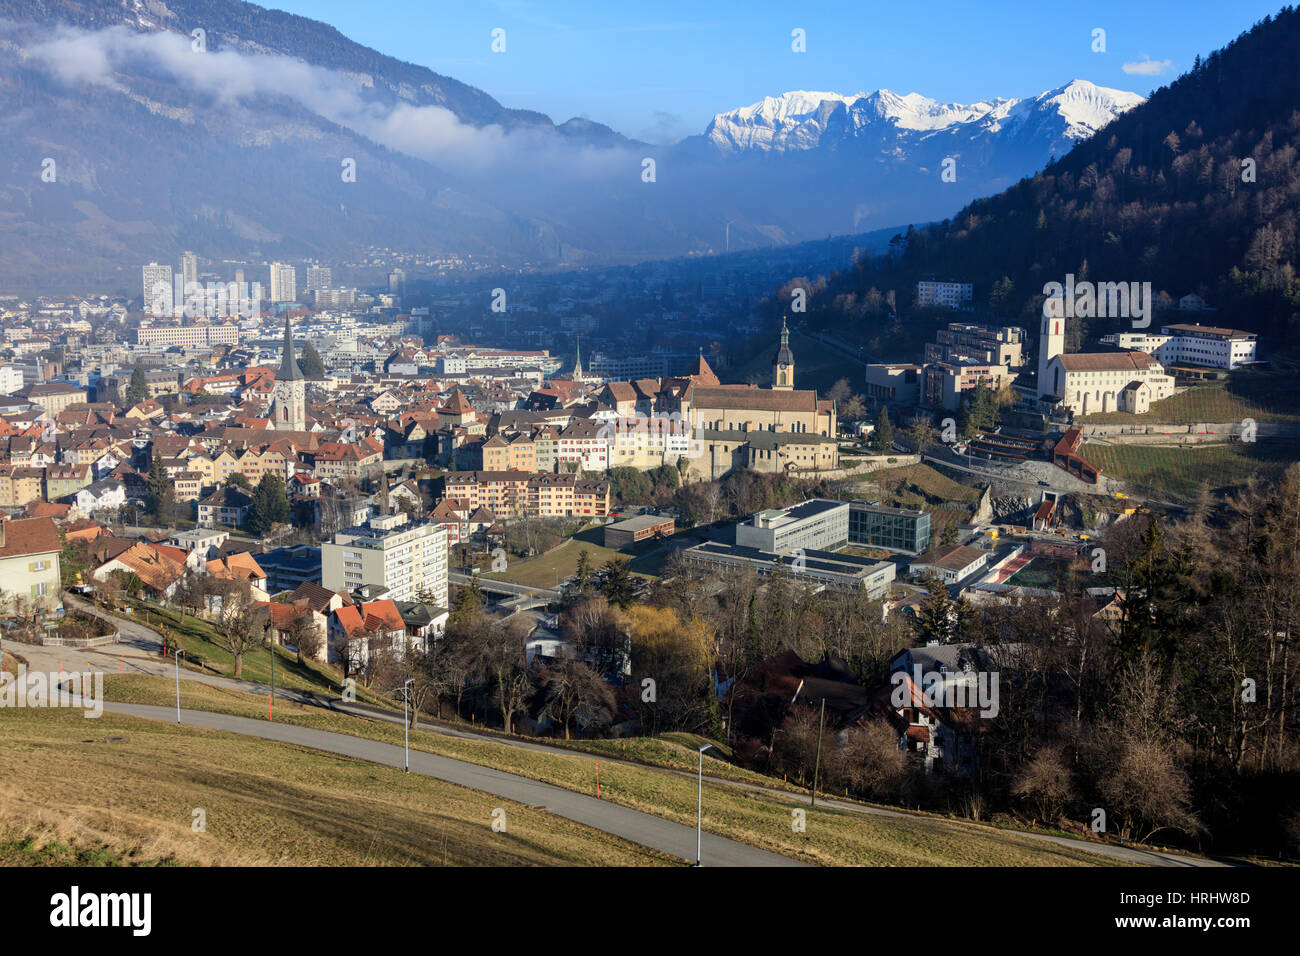 Vista de la ciudad de Chur, rodeada de bosques y picos nevados, distrito de Plessur, Cantón de Graubunden, Alpes Suizos, Suiza Foto de stock